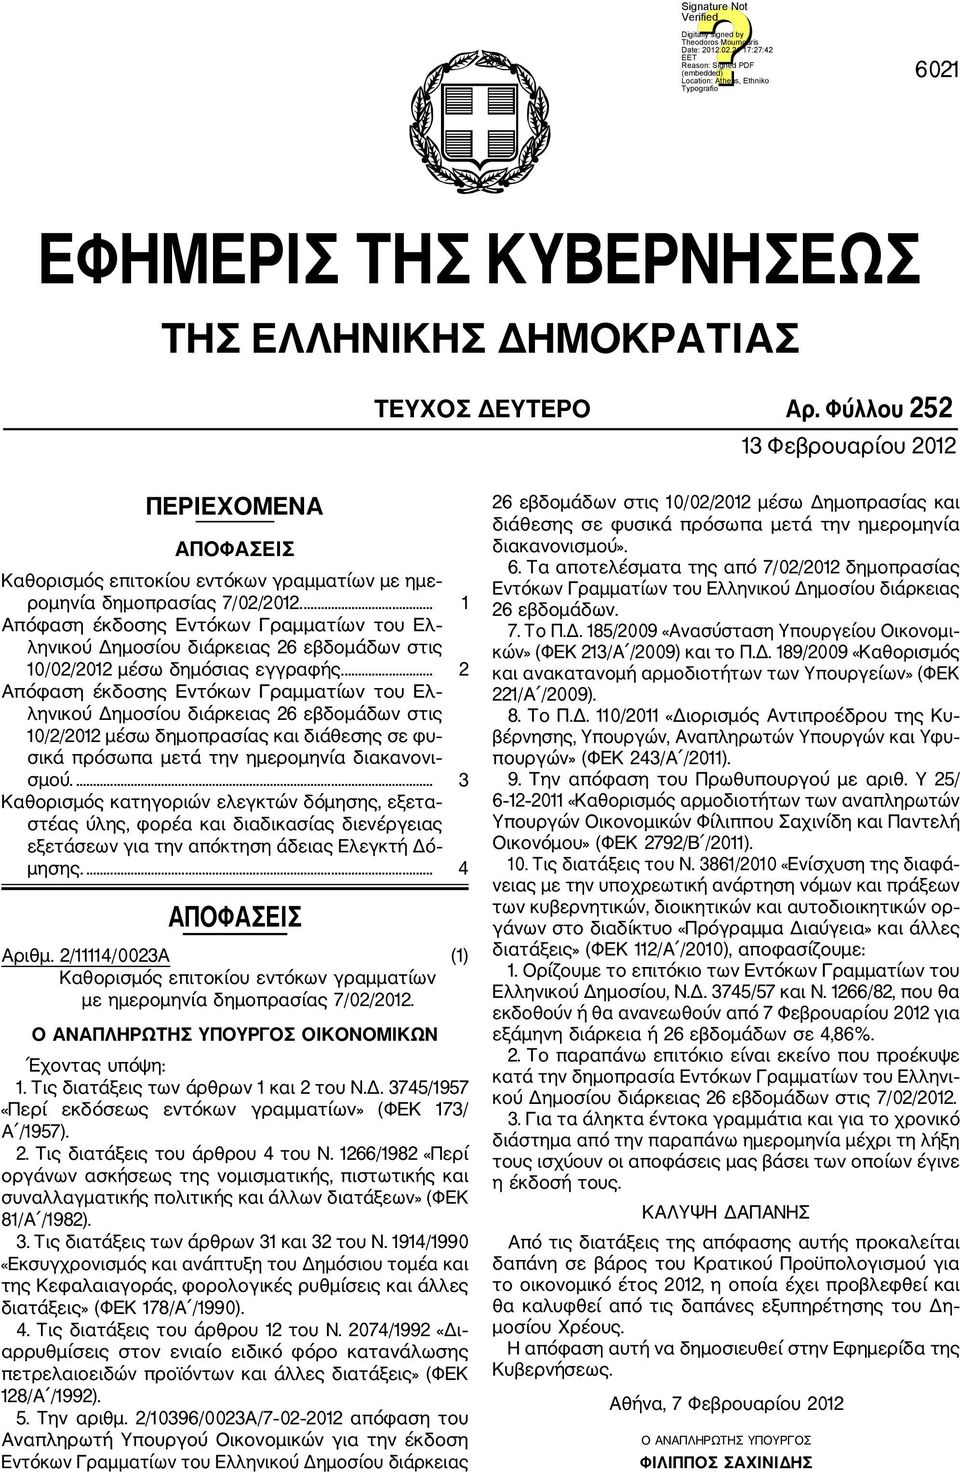 ... 1 Απόφαση έκδοσης Εντόκων Γραμματίων του Ελ ληνικού Δημοσίου διάρκειας 26 εβδομάδων στις 10/02/2012 μέσω δημόσιας εγγραφής.